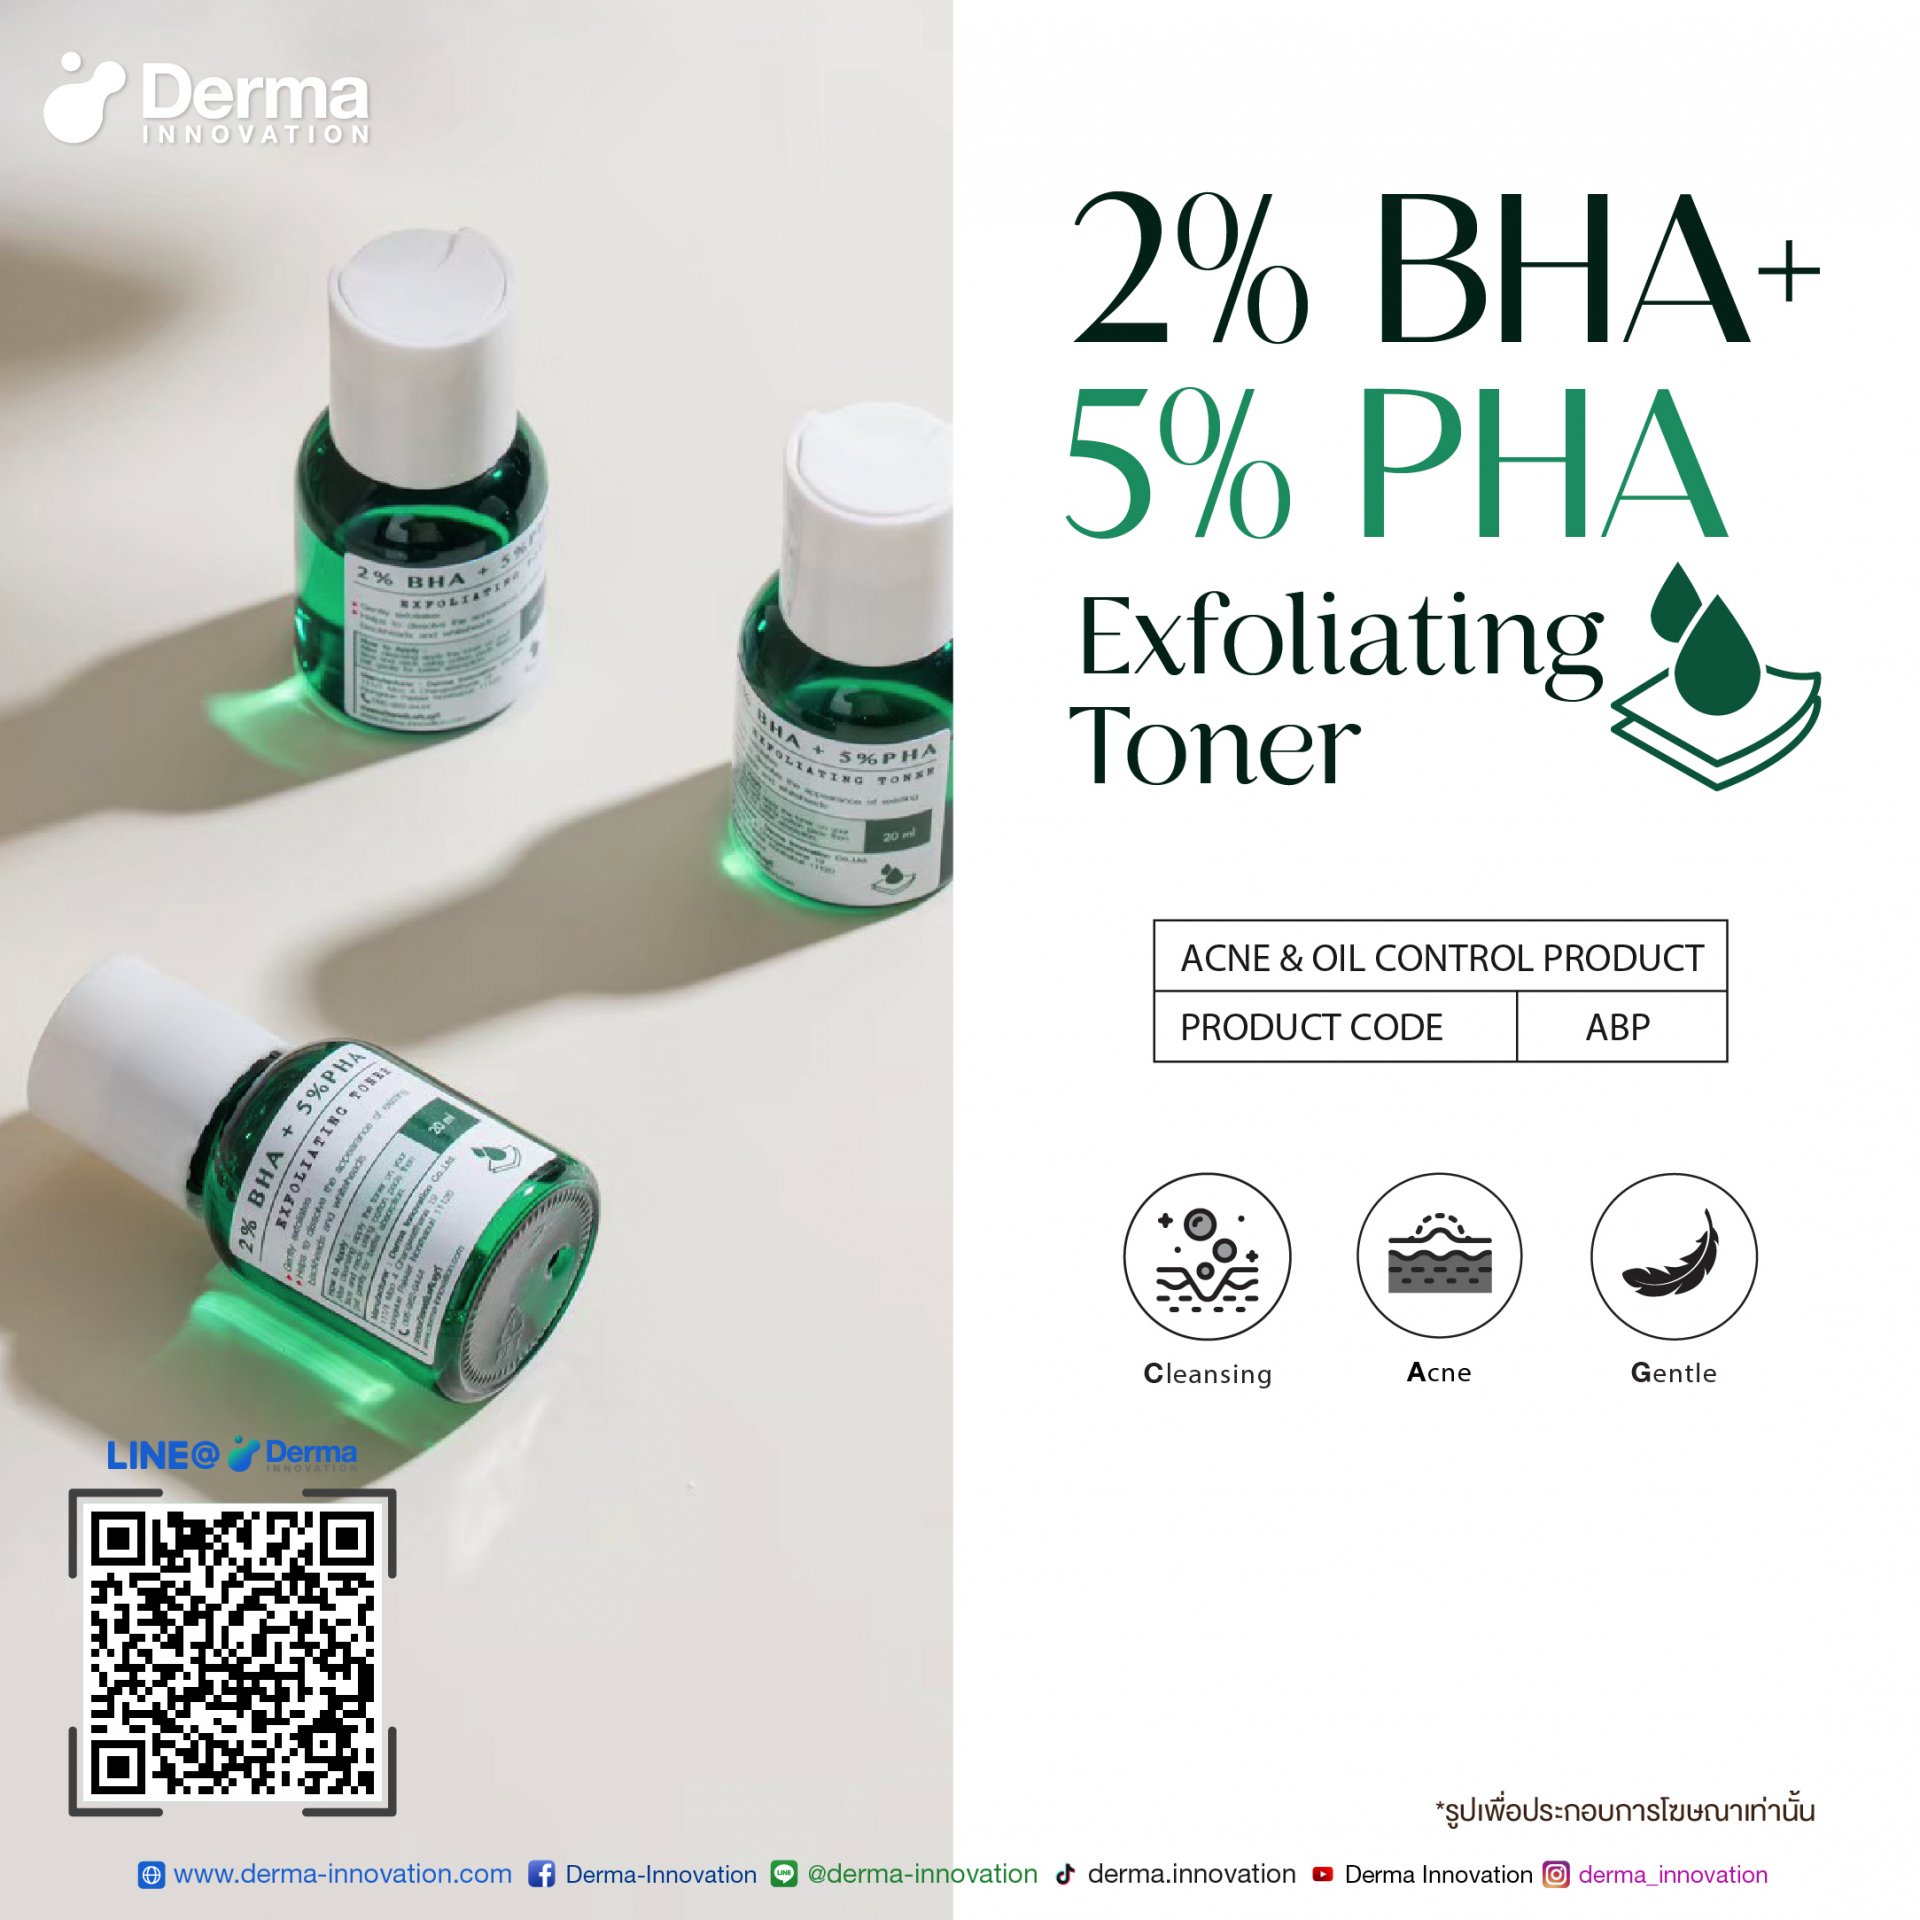 2% BHA + 5% PHA Exfoliating Toner